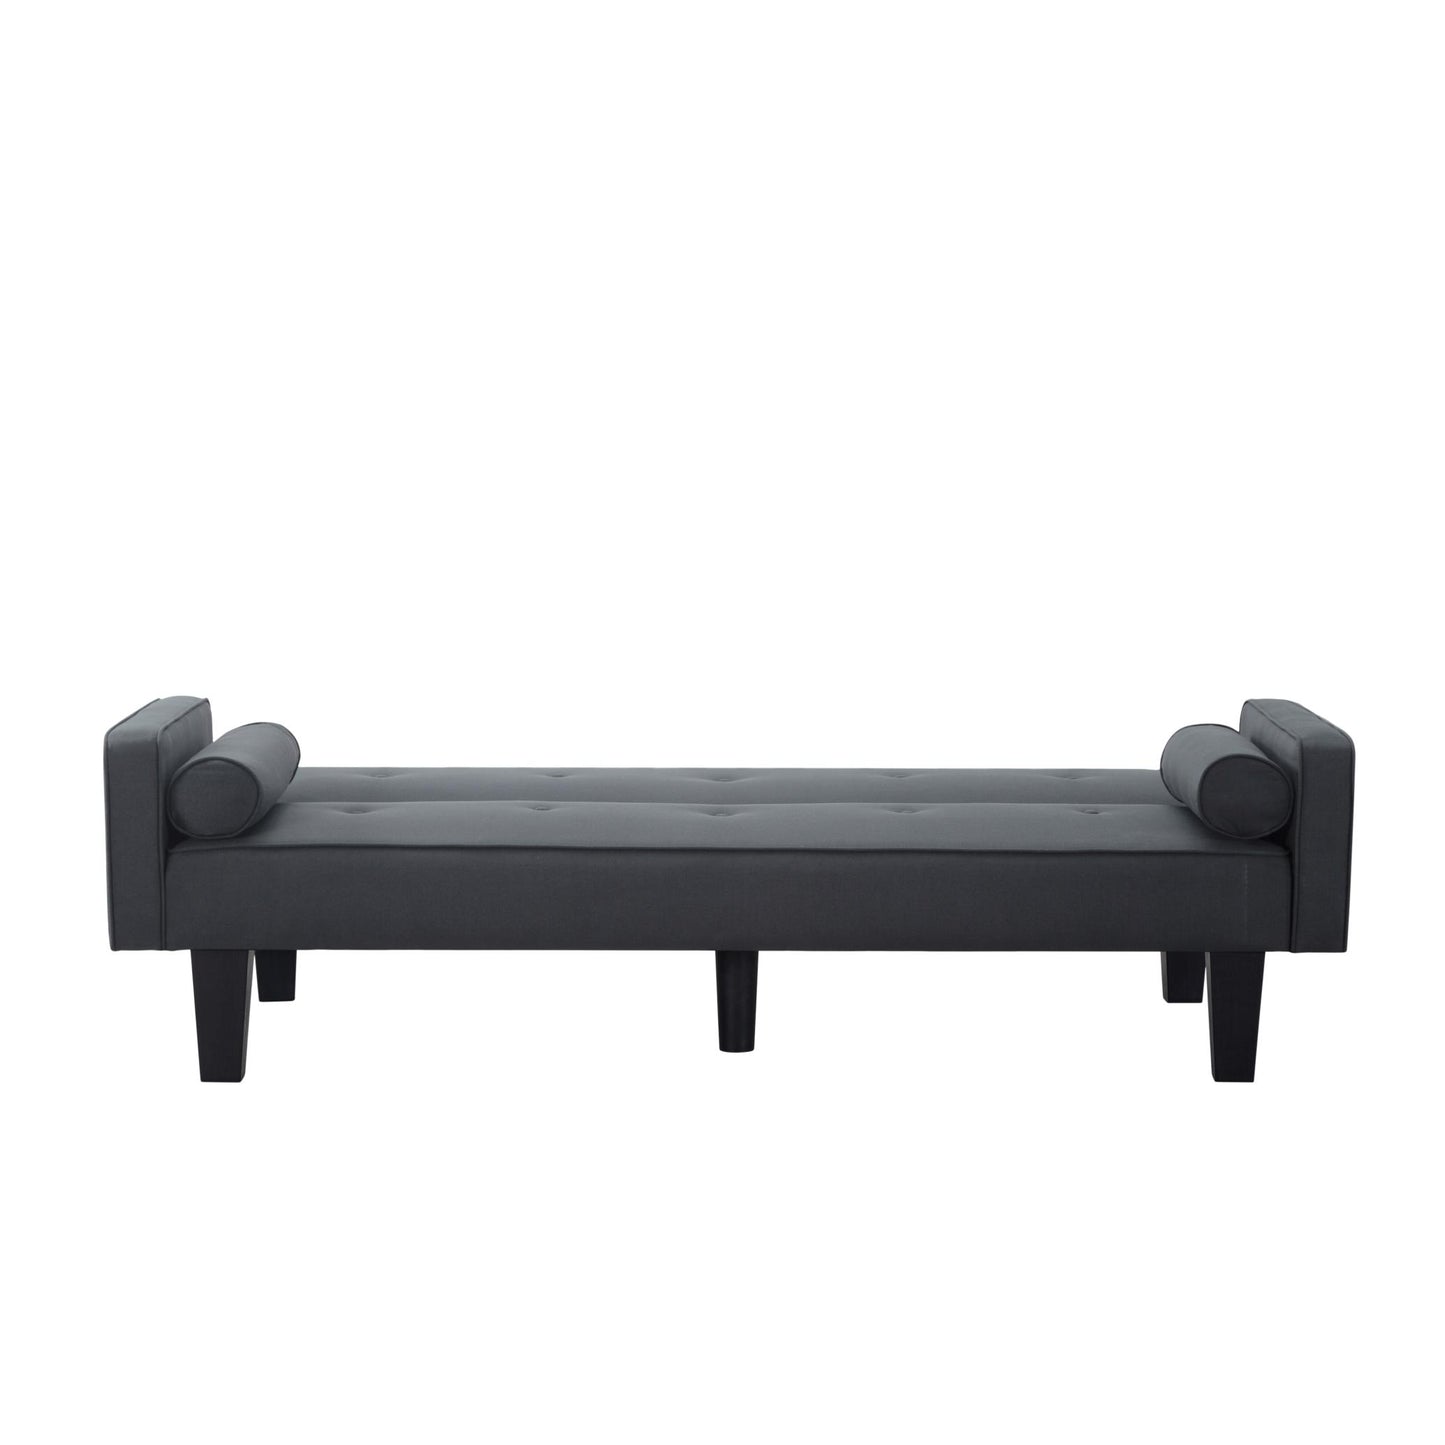 71.3” Futon Sofa bed